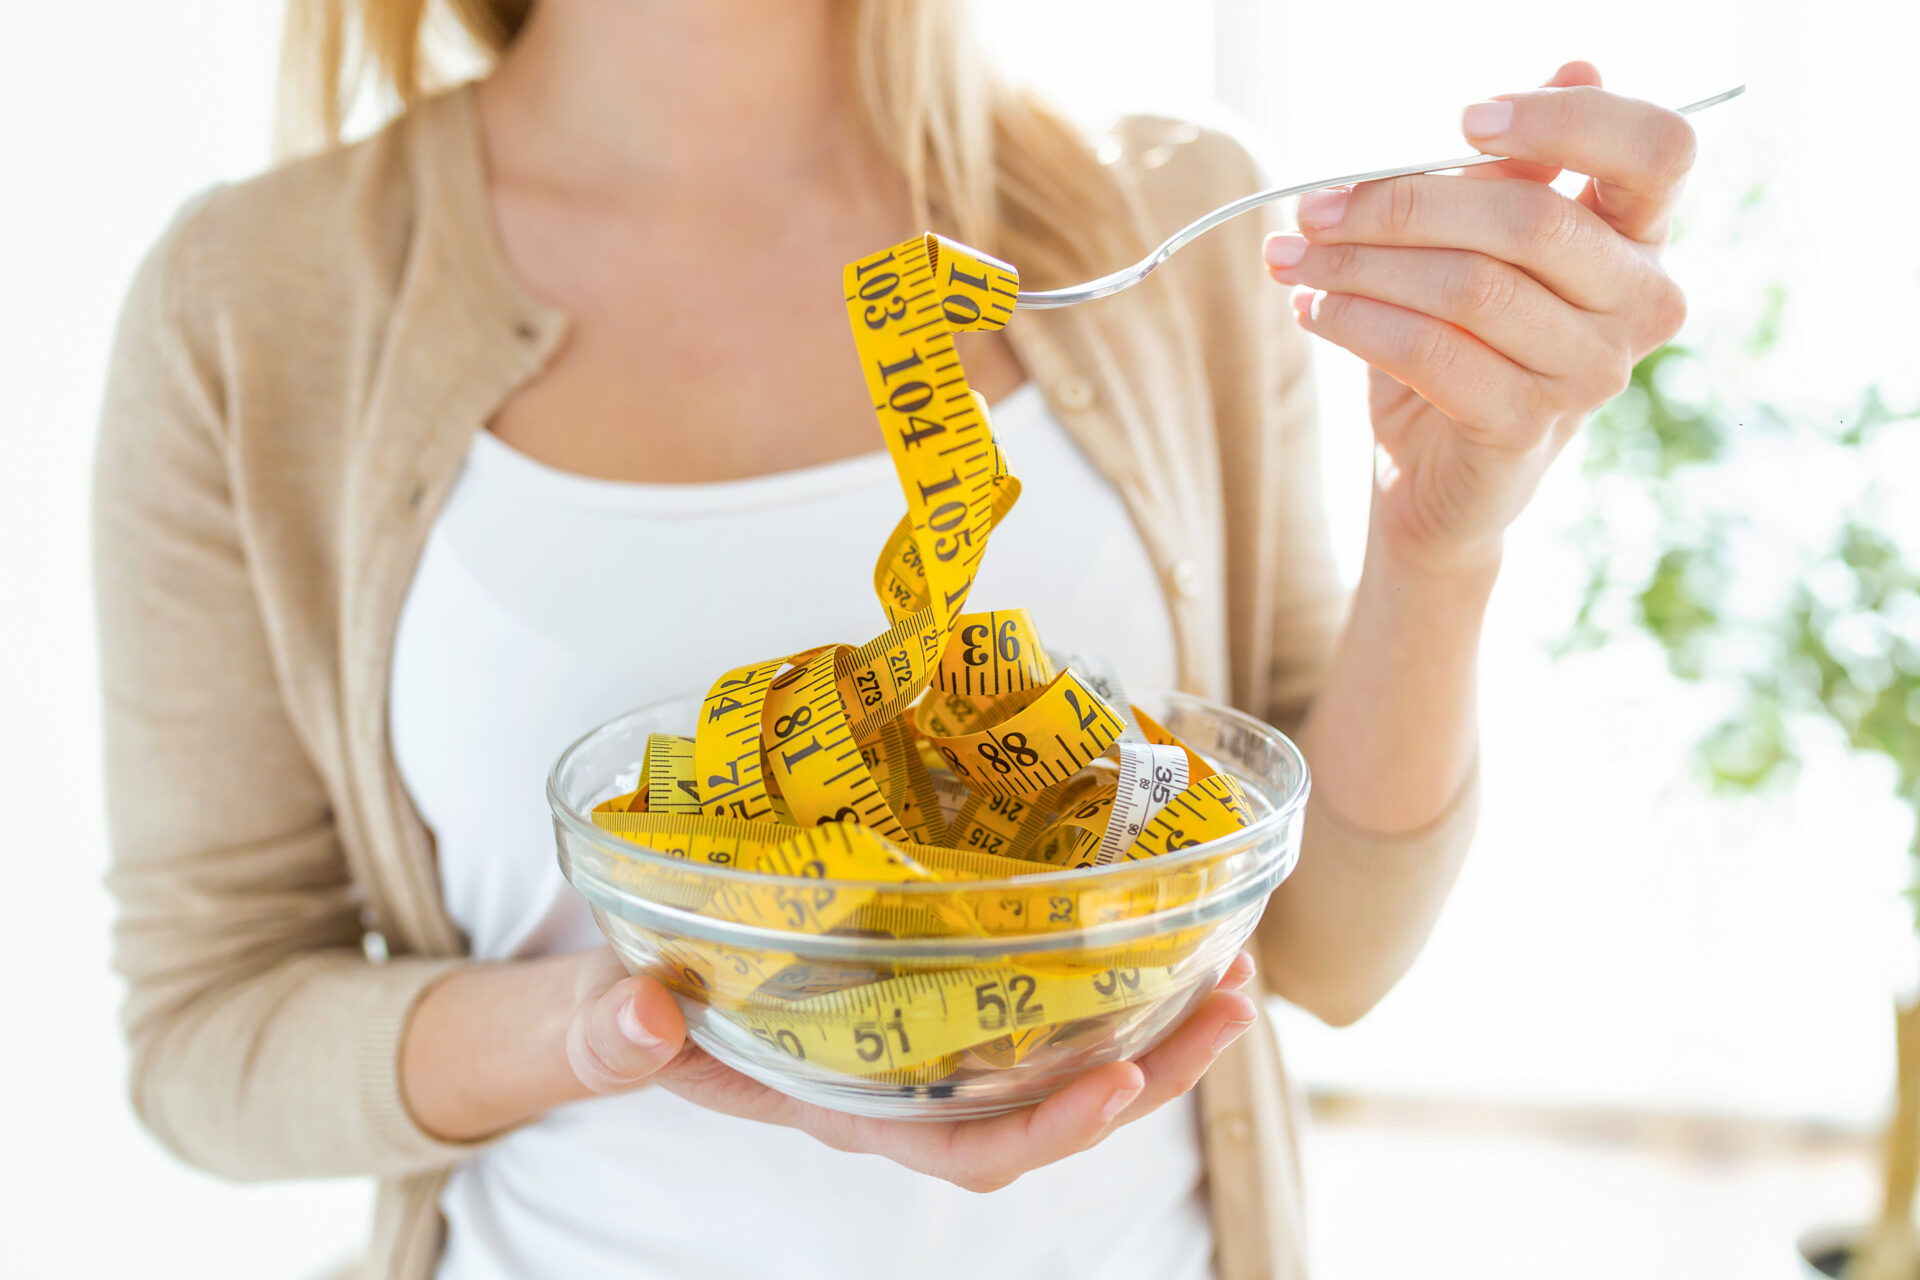 太る食べ物リスト｜痩せるために避けるべき食材とその特徴